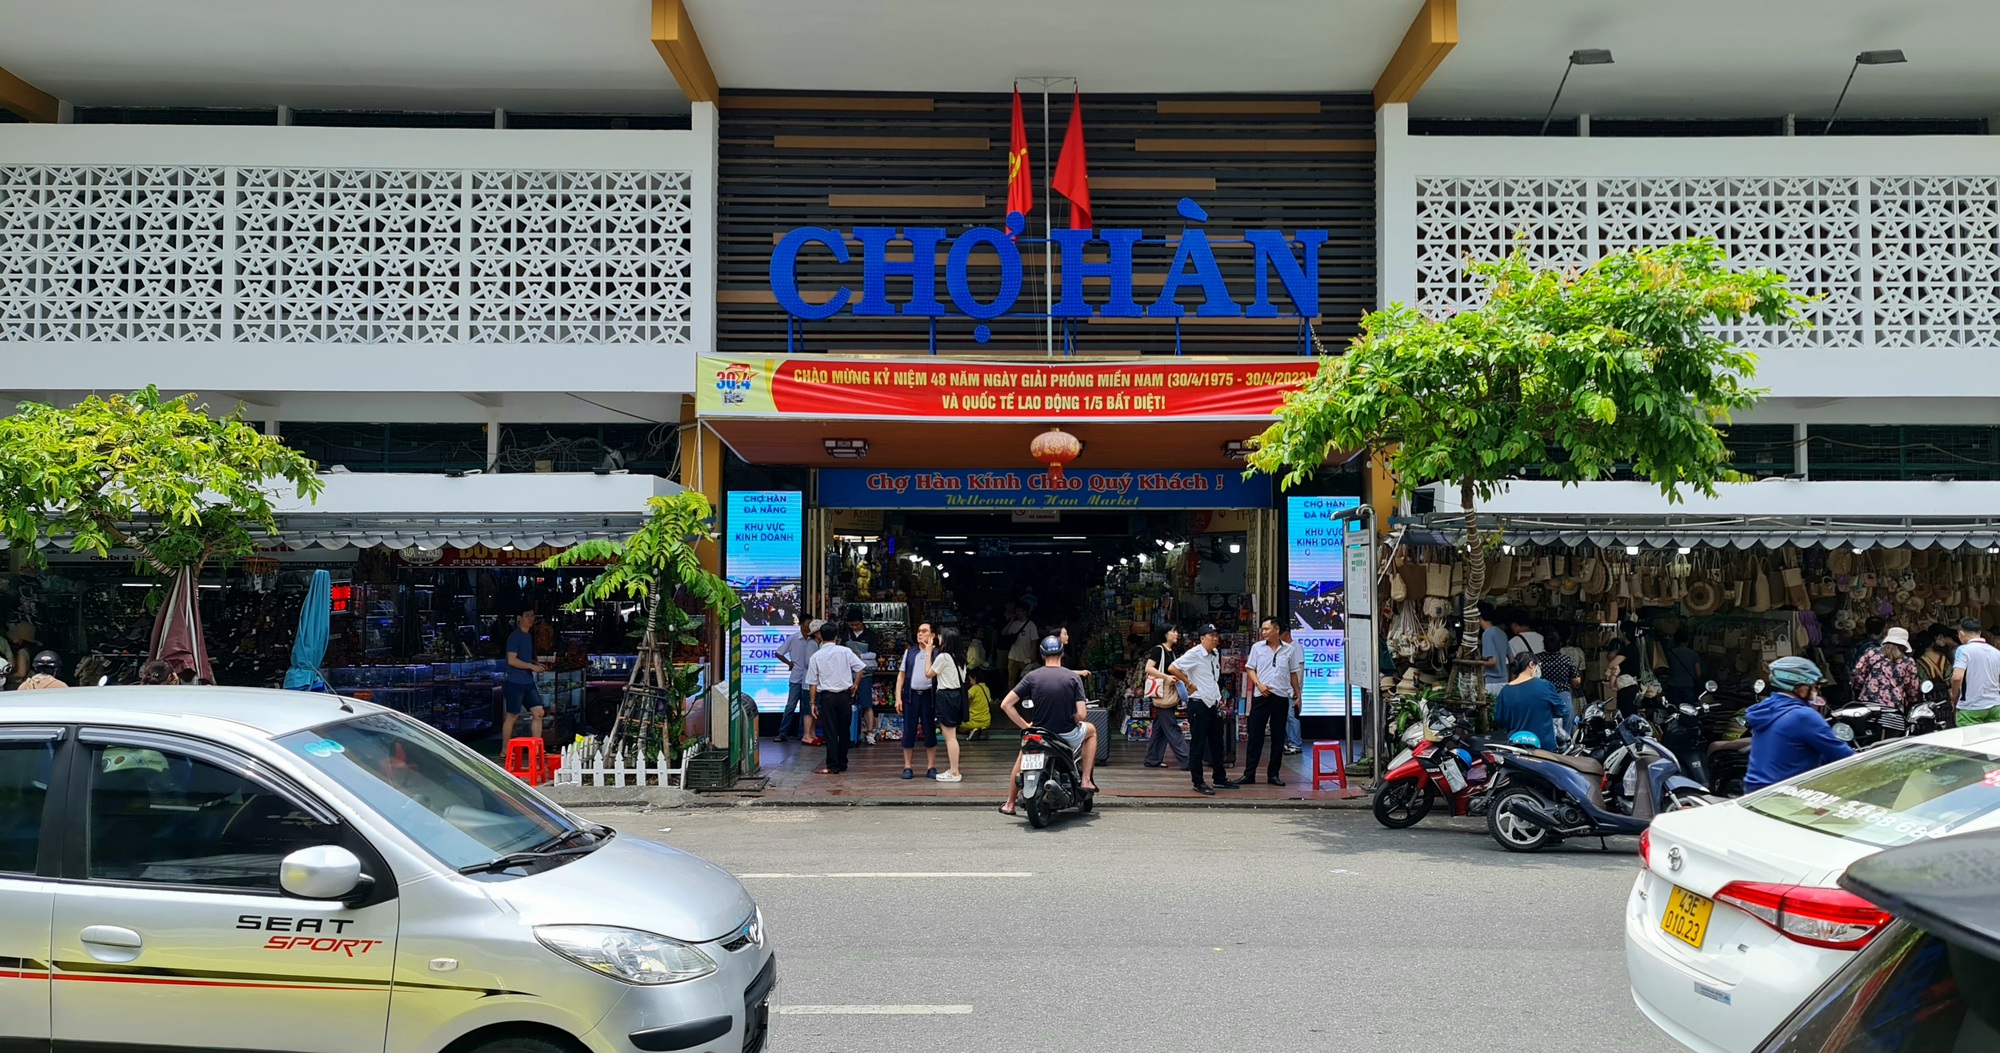 Chợ nước ngoài tại Đà Nẵng đón hàng ngàn khách du lịch mỗi ngày - Ảnh 12.